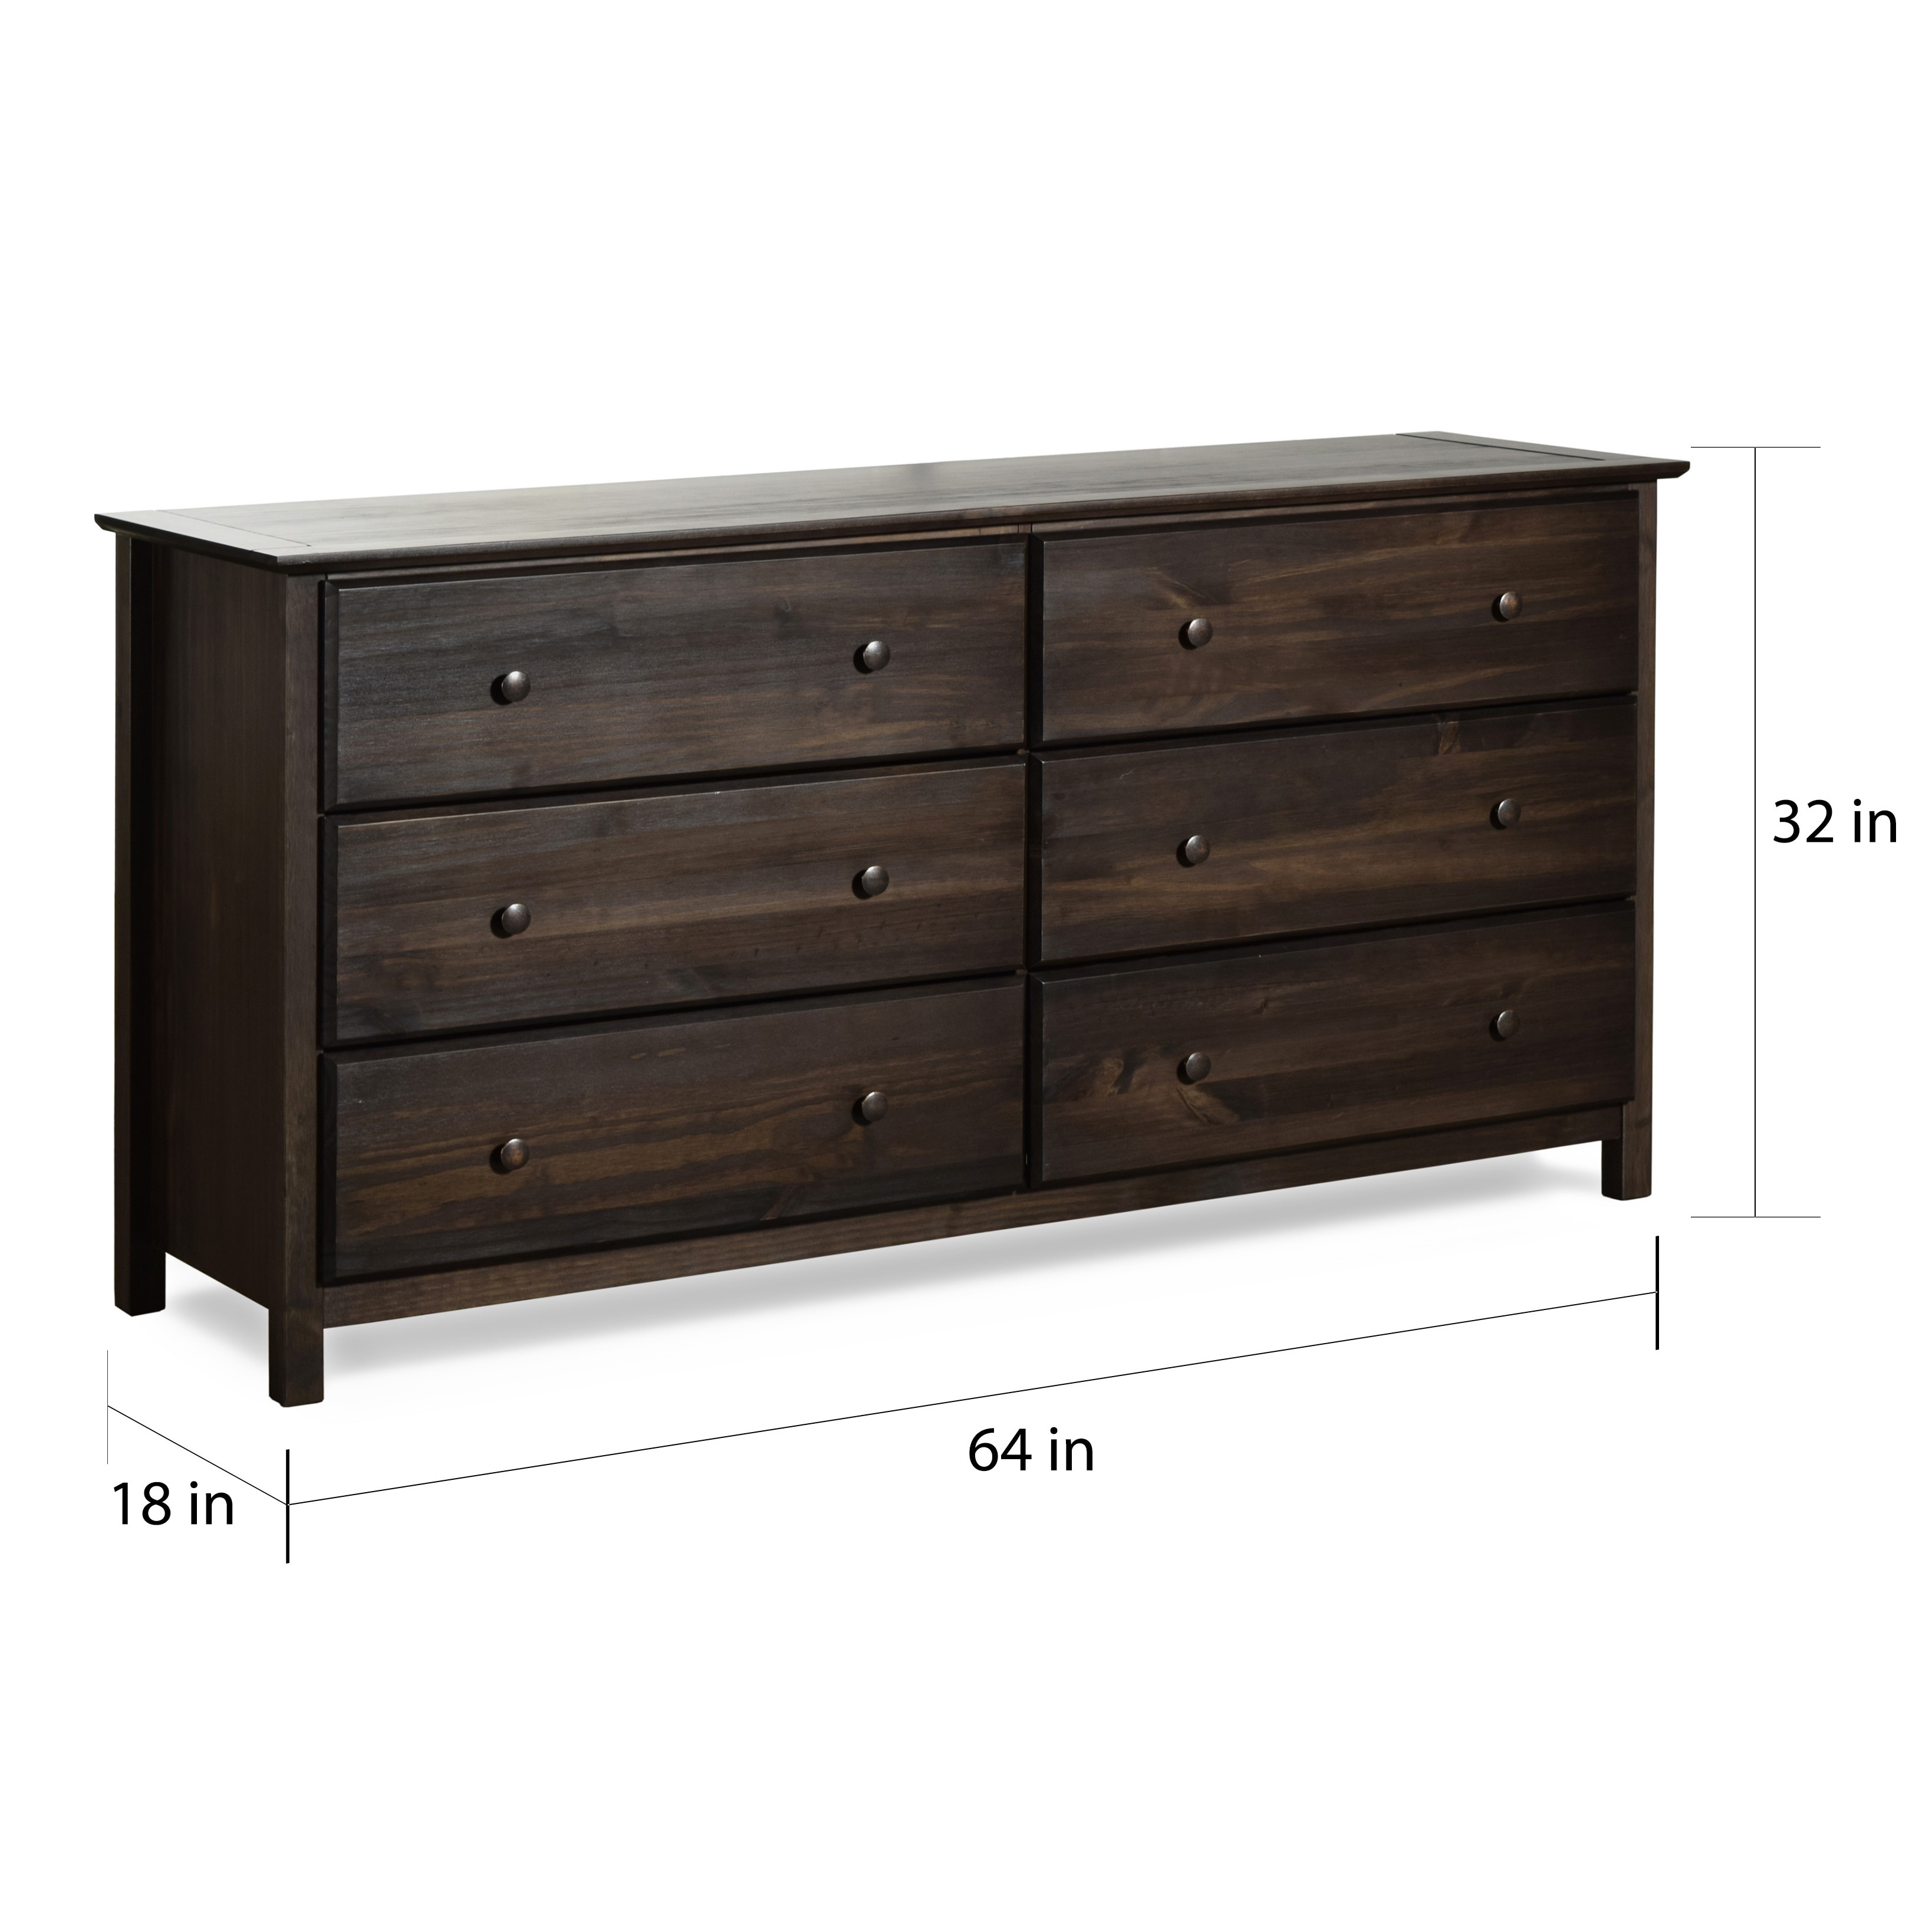 Shop Grain Wood Furniture Shaker 6 Drawer Solid Wood Dresser